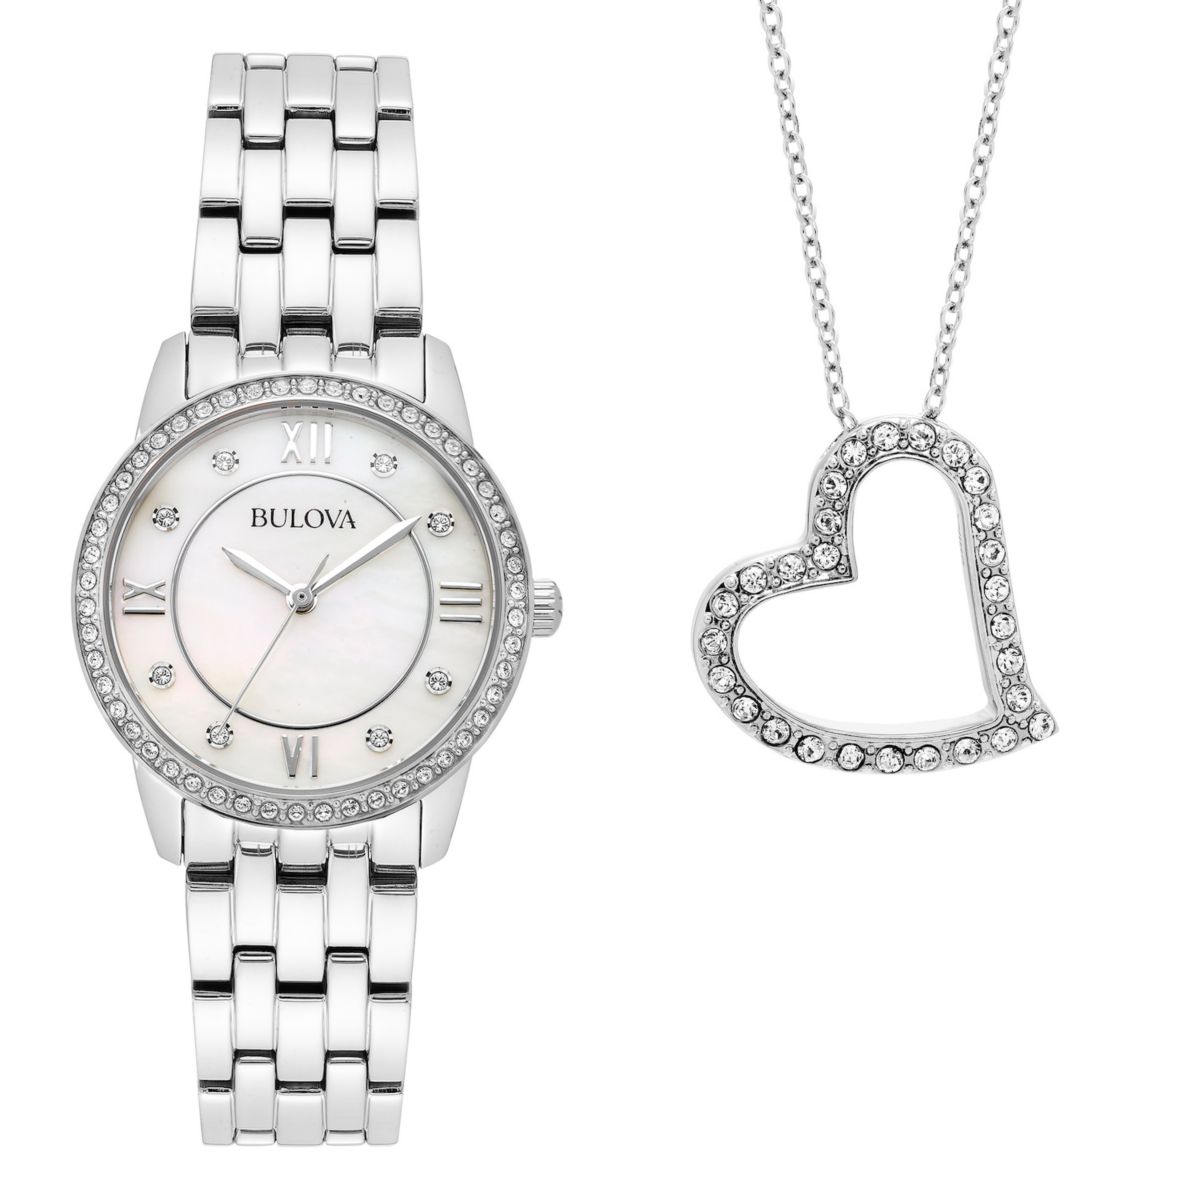 Женские часы Bulova с кристаллами и колье в виде сердца, подарочный набор - 96X155 Bulova